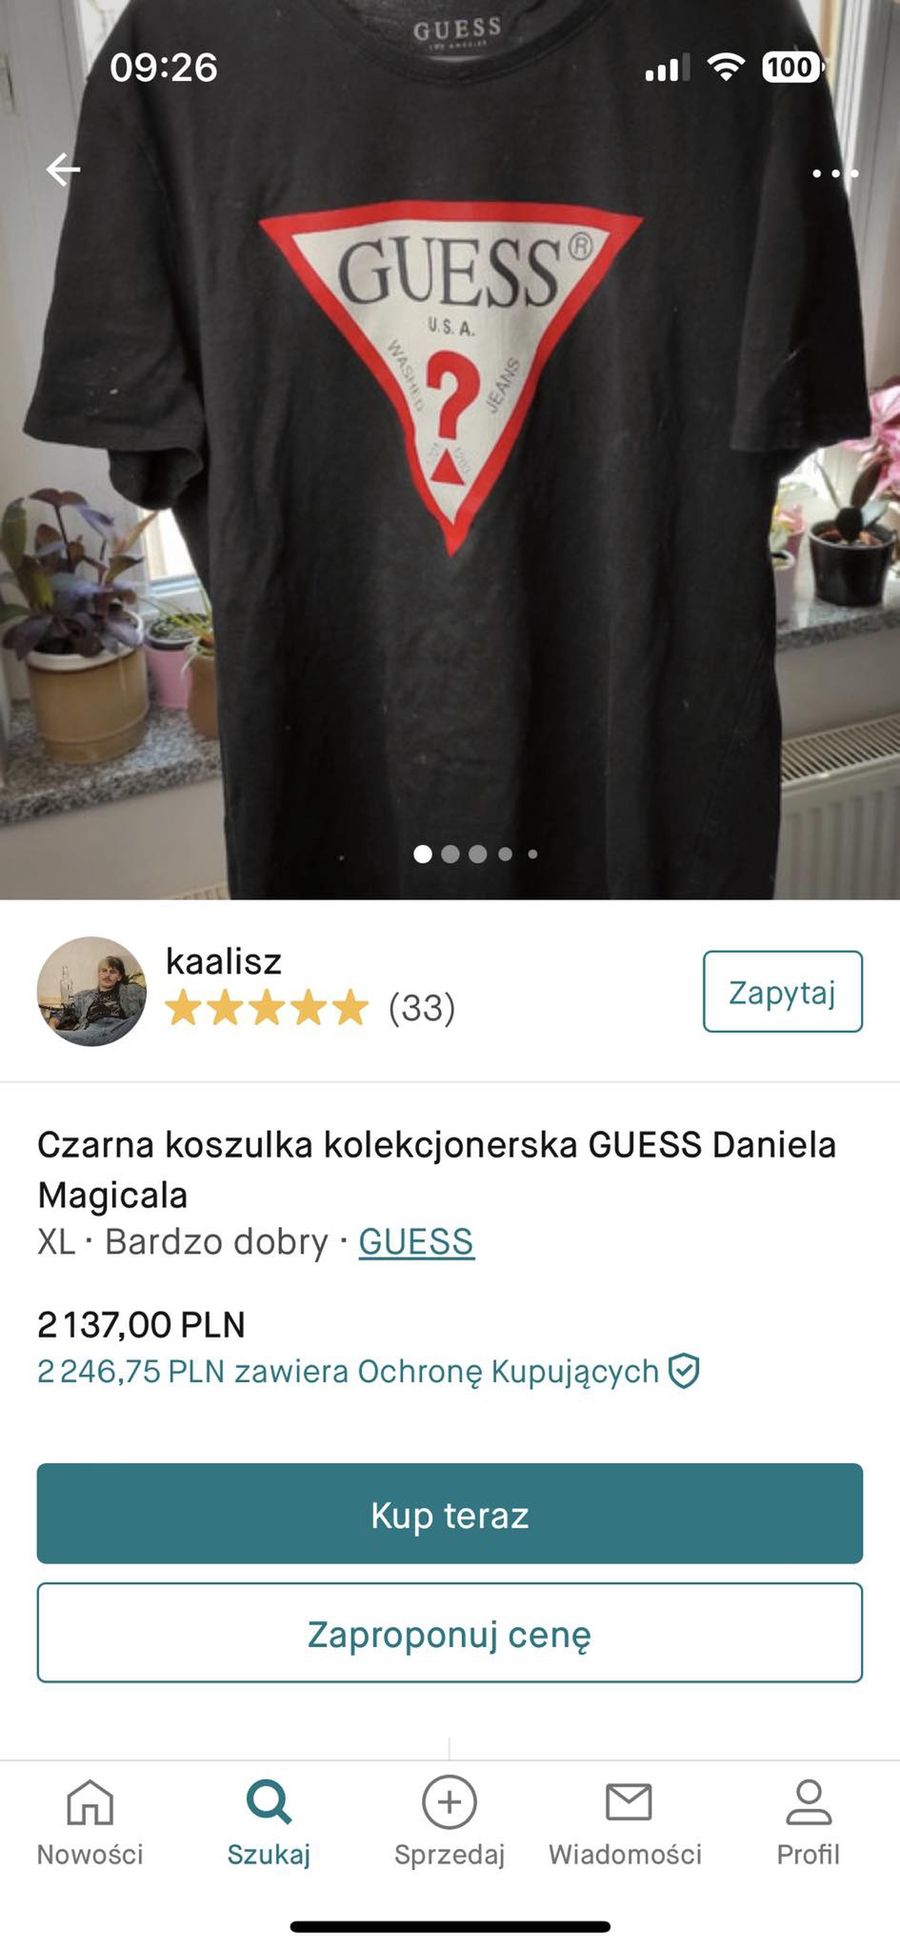 Koszulka Daniela Magicala do kupienia za 2137 zł